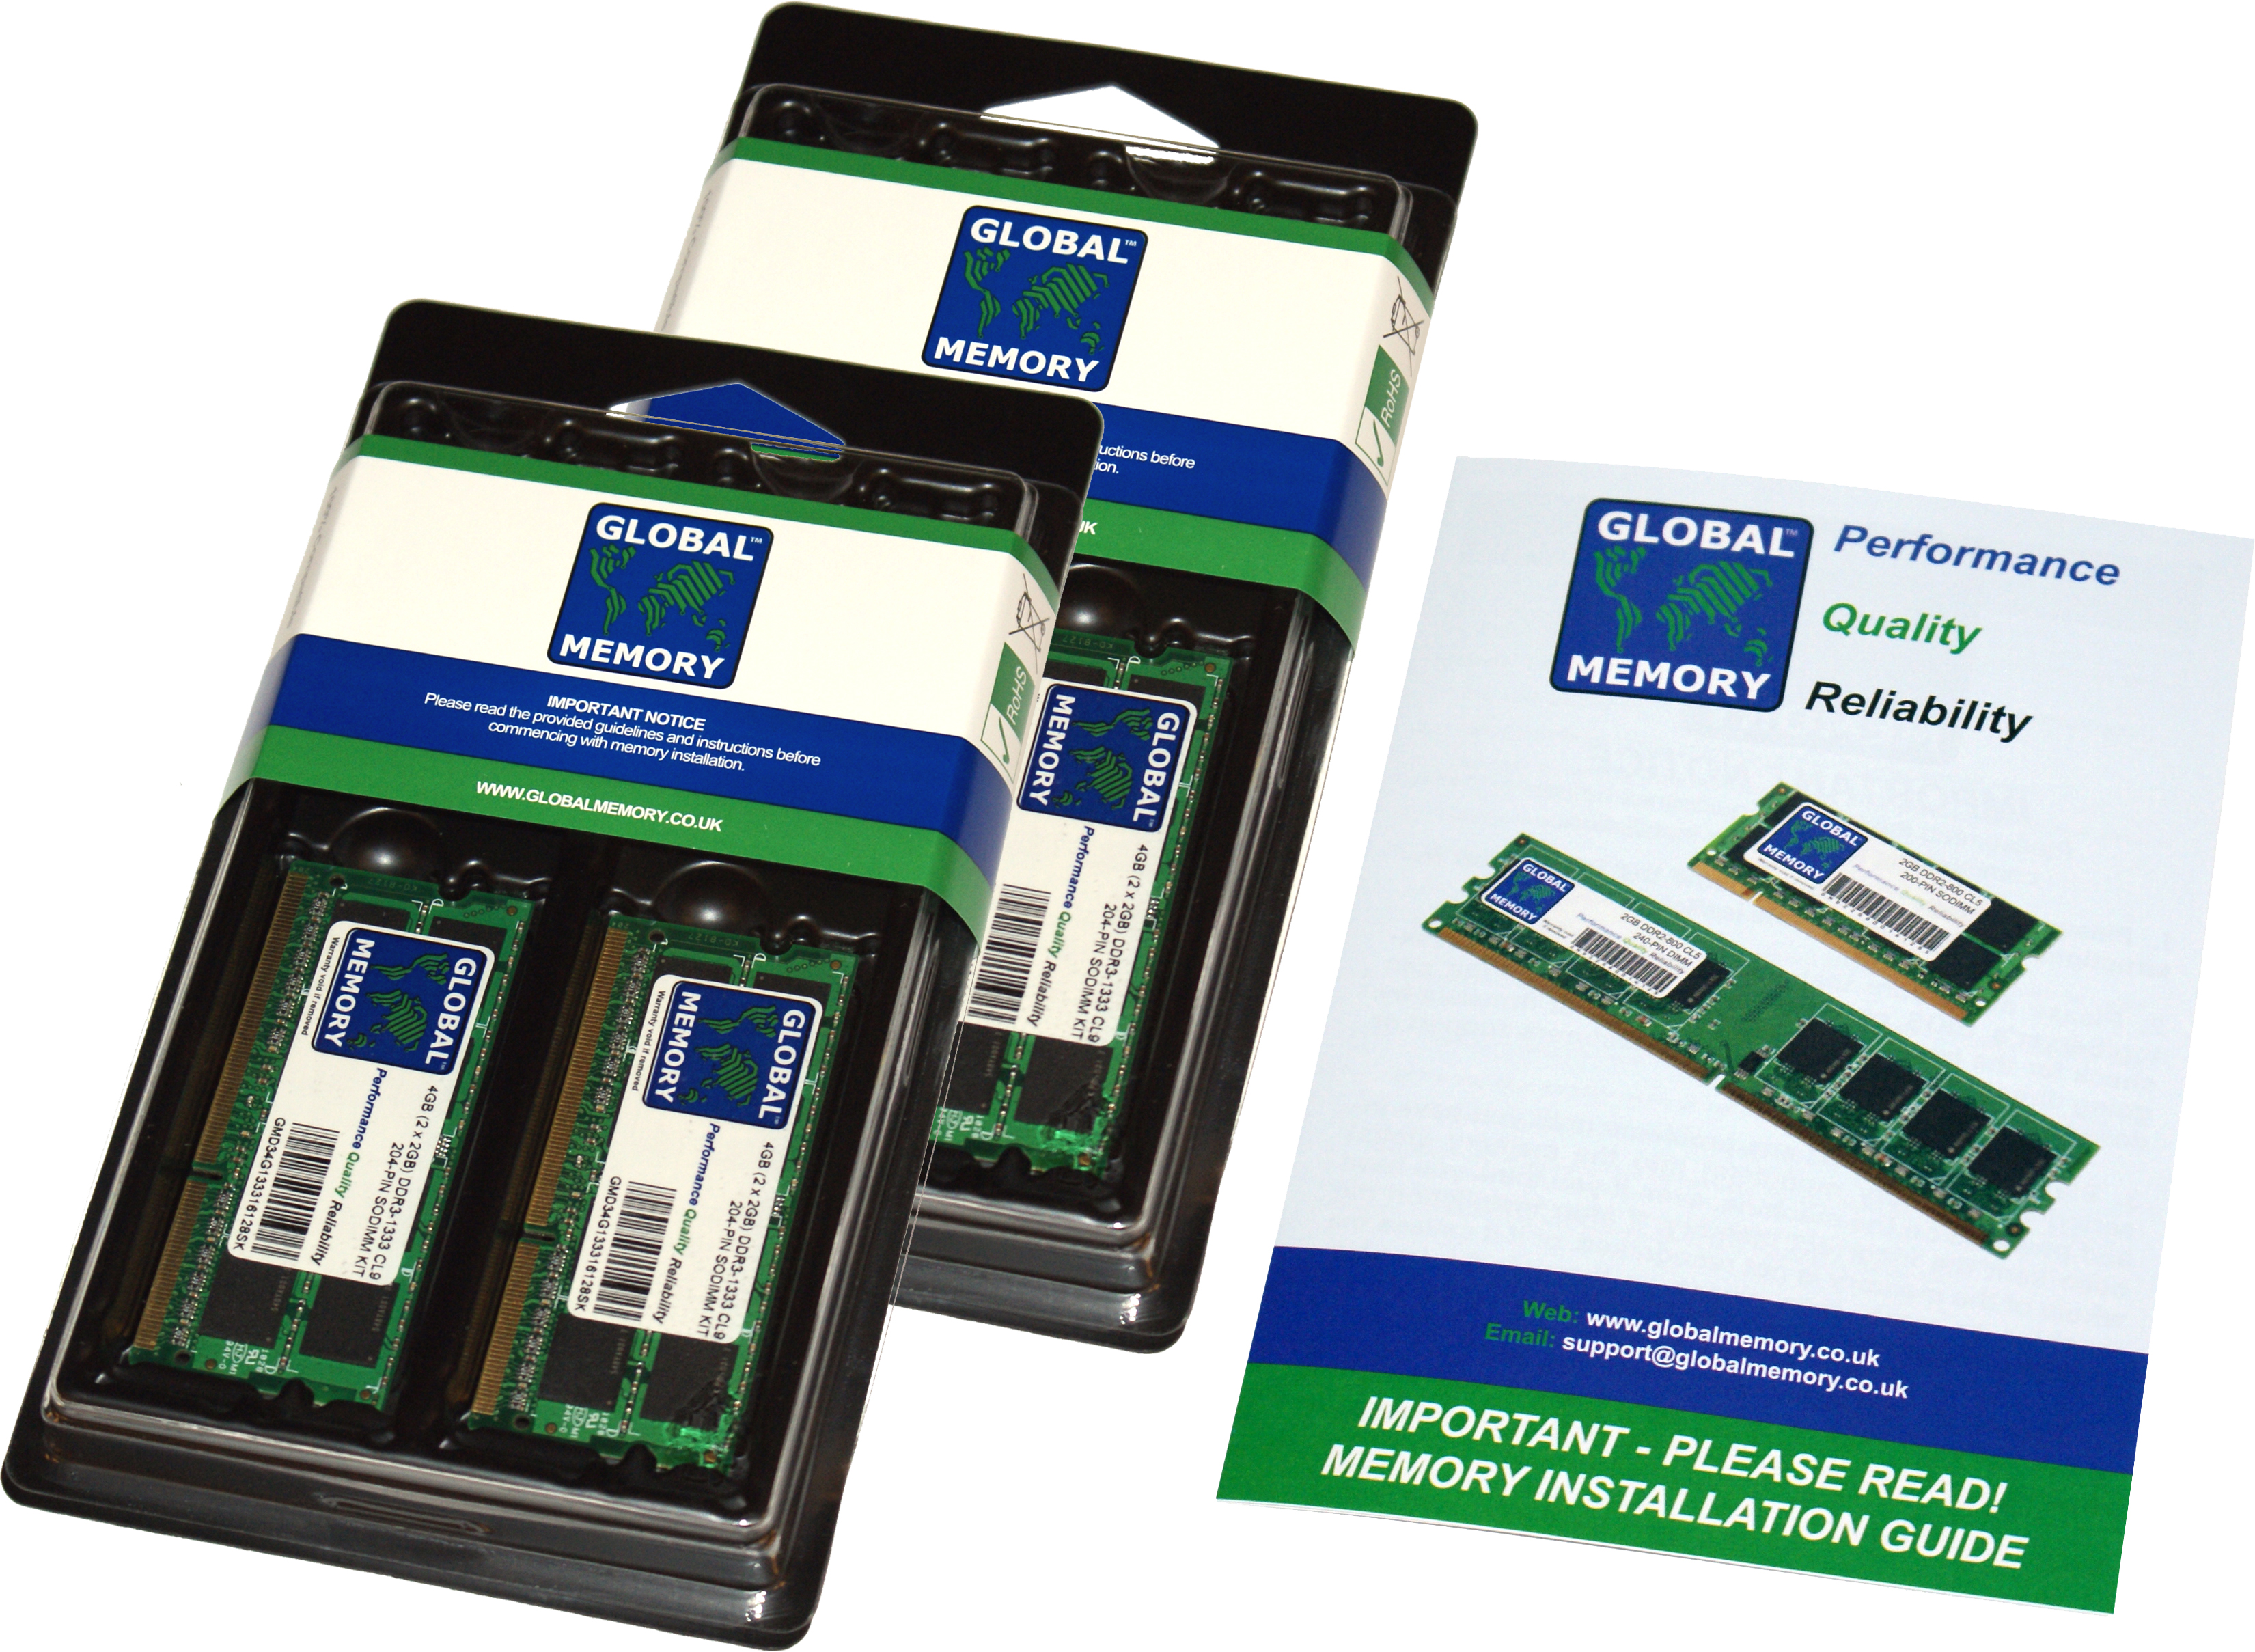 64GB (4 x 16GB) DDR4 2666MHz PC4-21300 260-PIN SODIMM MEMORY RAM KIT FOR FUJITSU LAPTOPS/NOTEBOOKS